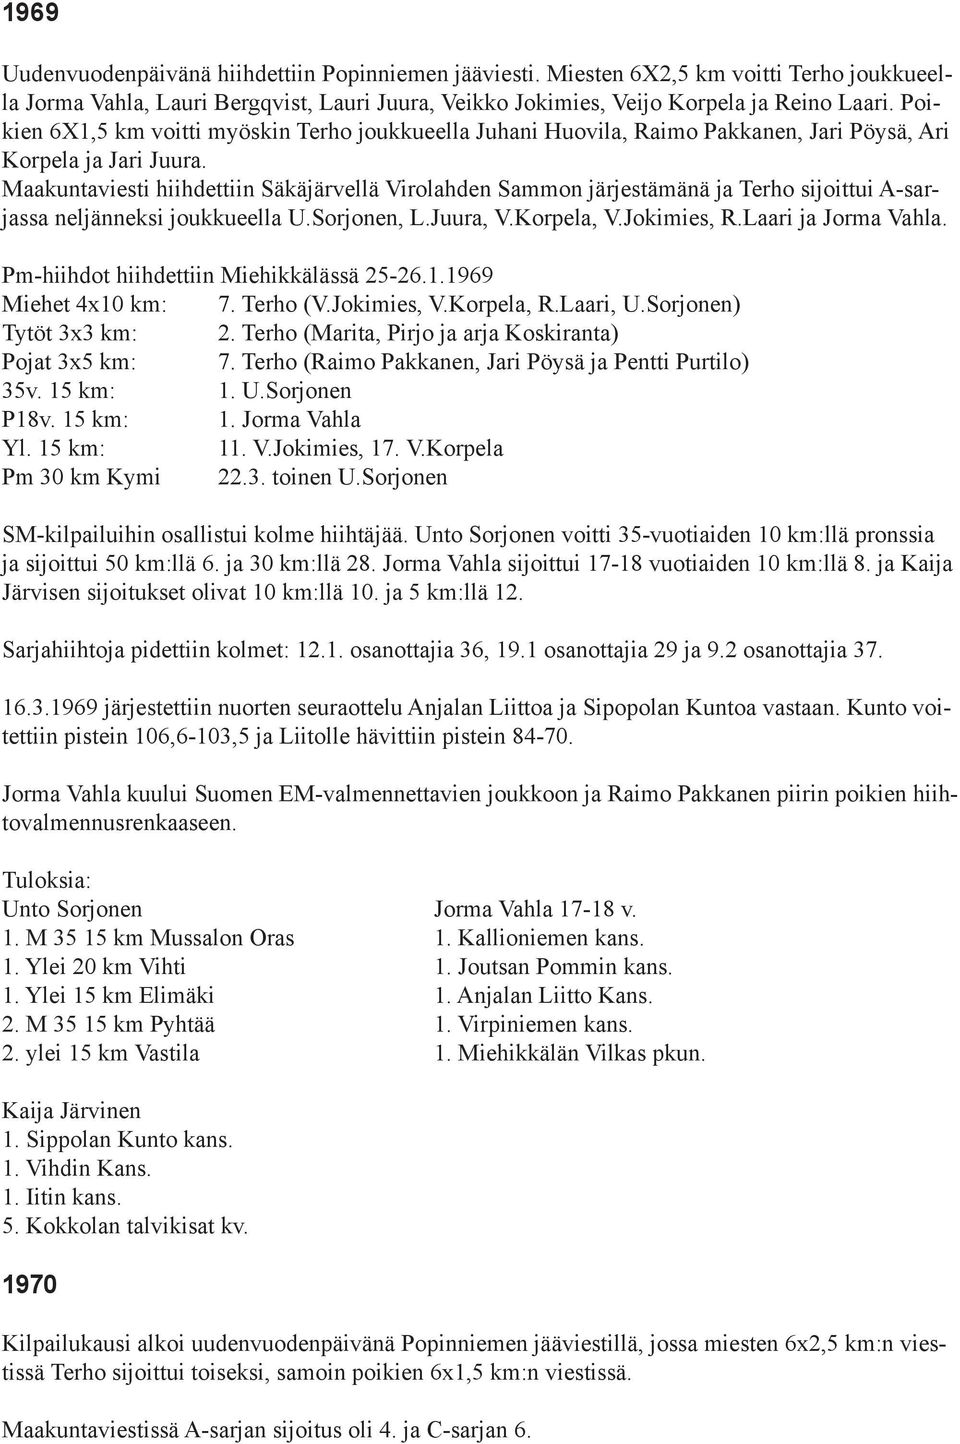 Maakuntaviesti hiihdettiin Säkäjärvellä Virolahden Sammon järjestämänä ja Terho sijoittui A-sarjassa neljänneksi joukkueella U.Sorjonen, L.Juura, V.Korpela, V.Jokimies, R.Laari ja Jorma Vahla.